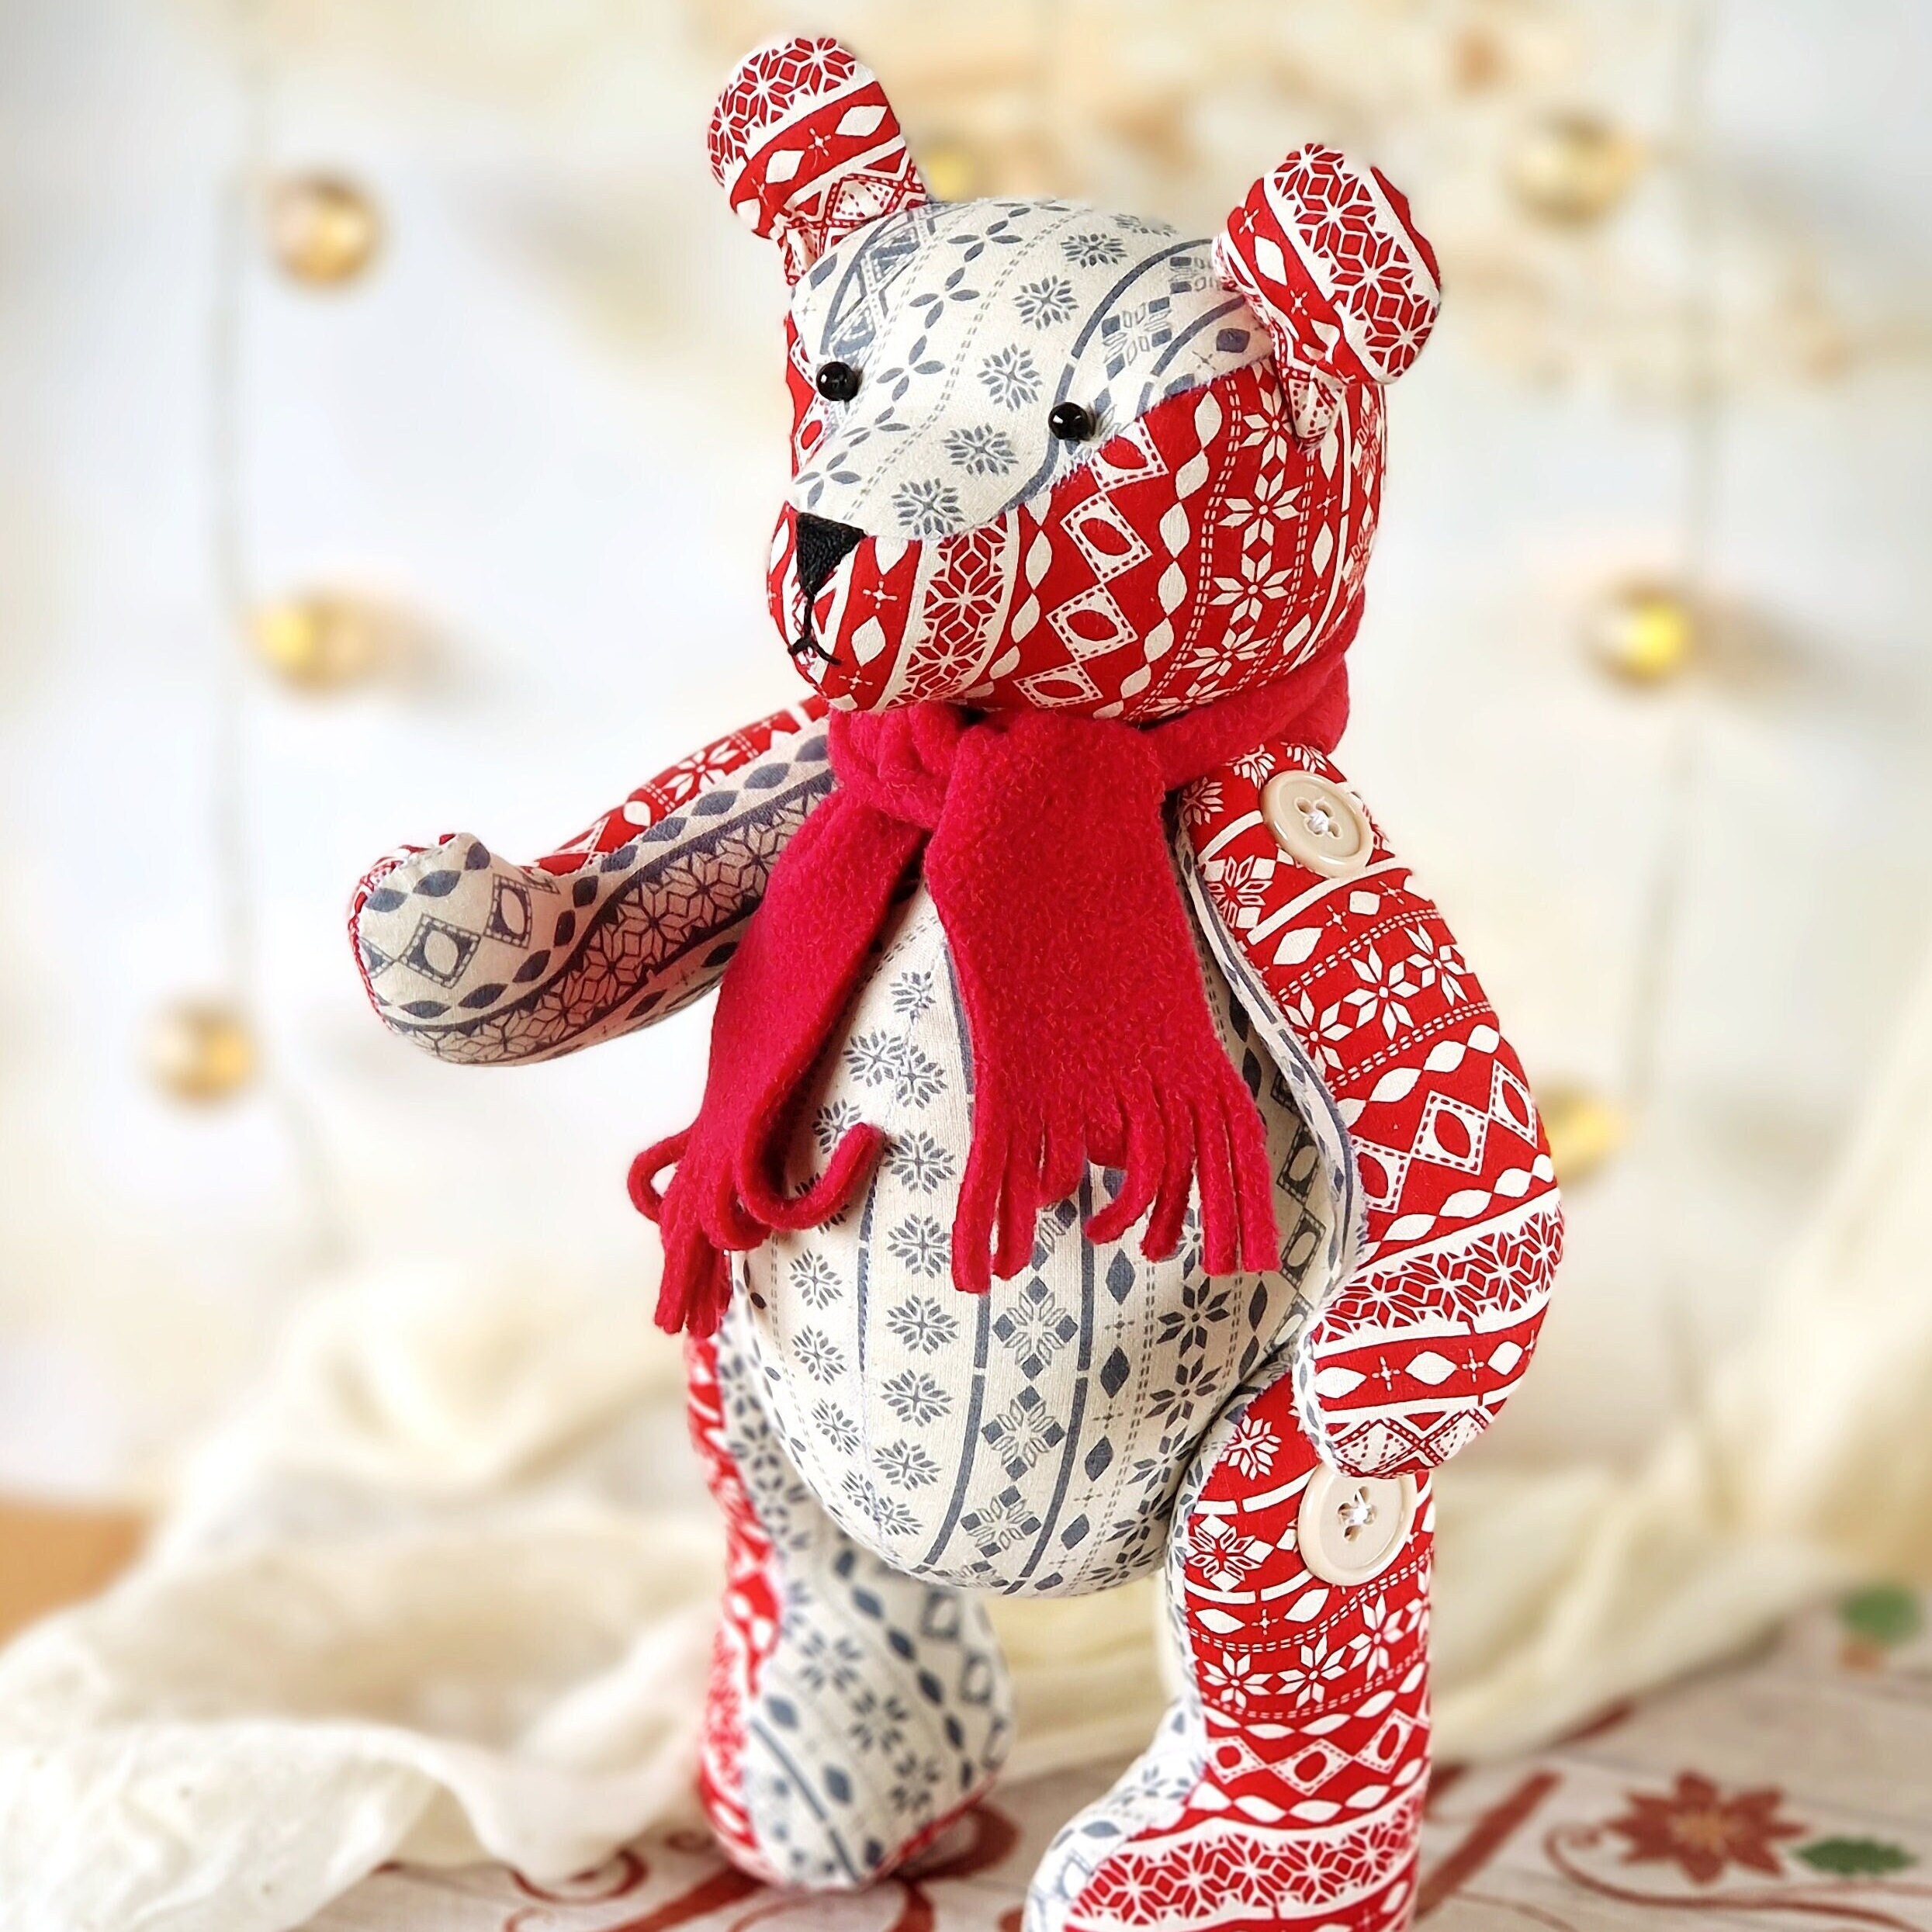 Memory Bear SEWING PATTERN, Jingle Bear Soft Toy by My Fabric Heaven, UK